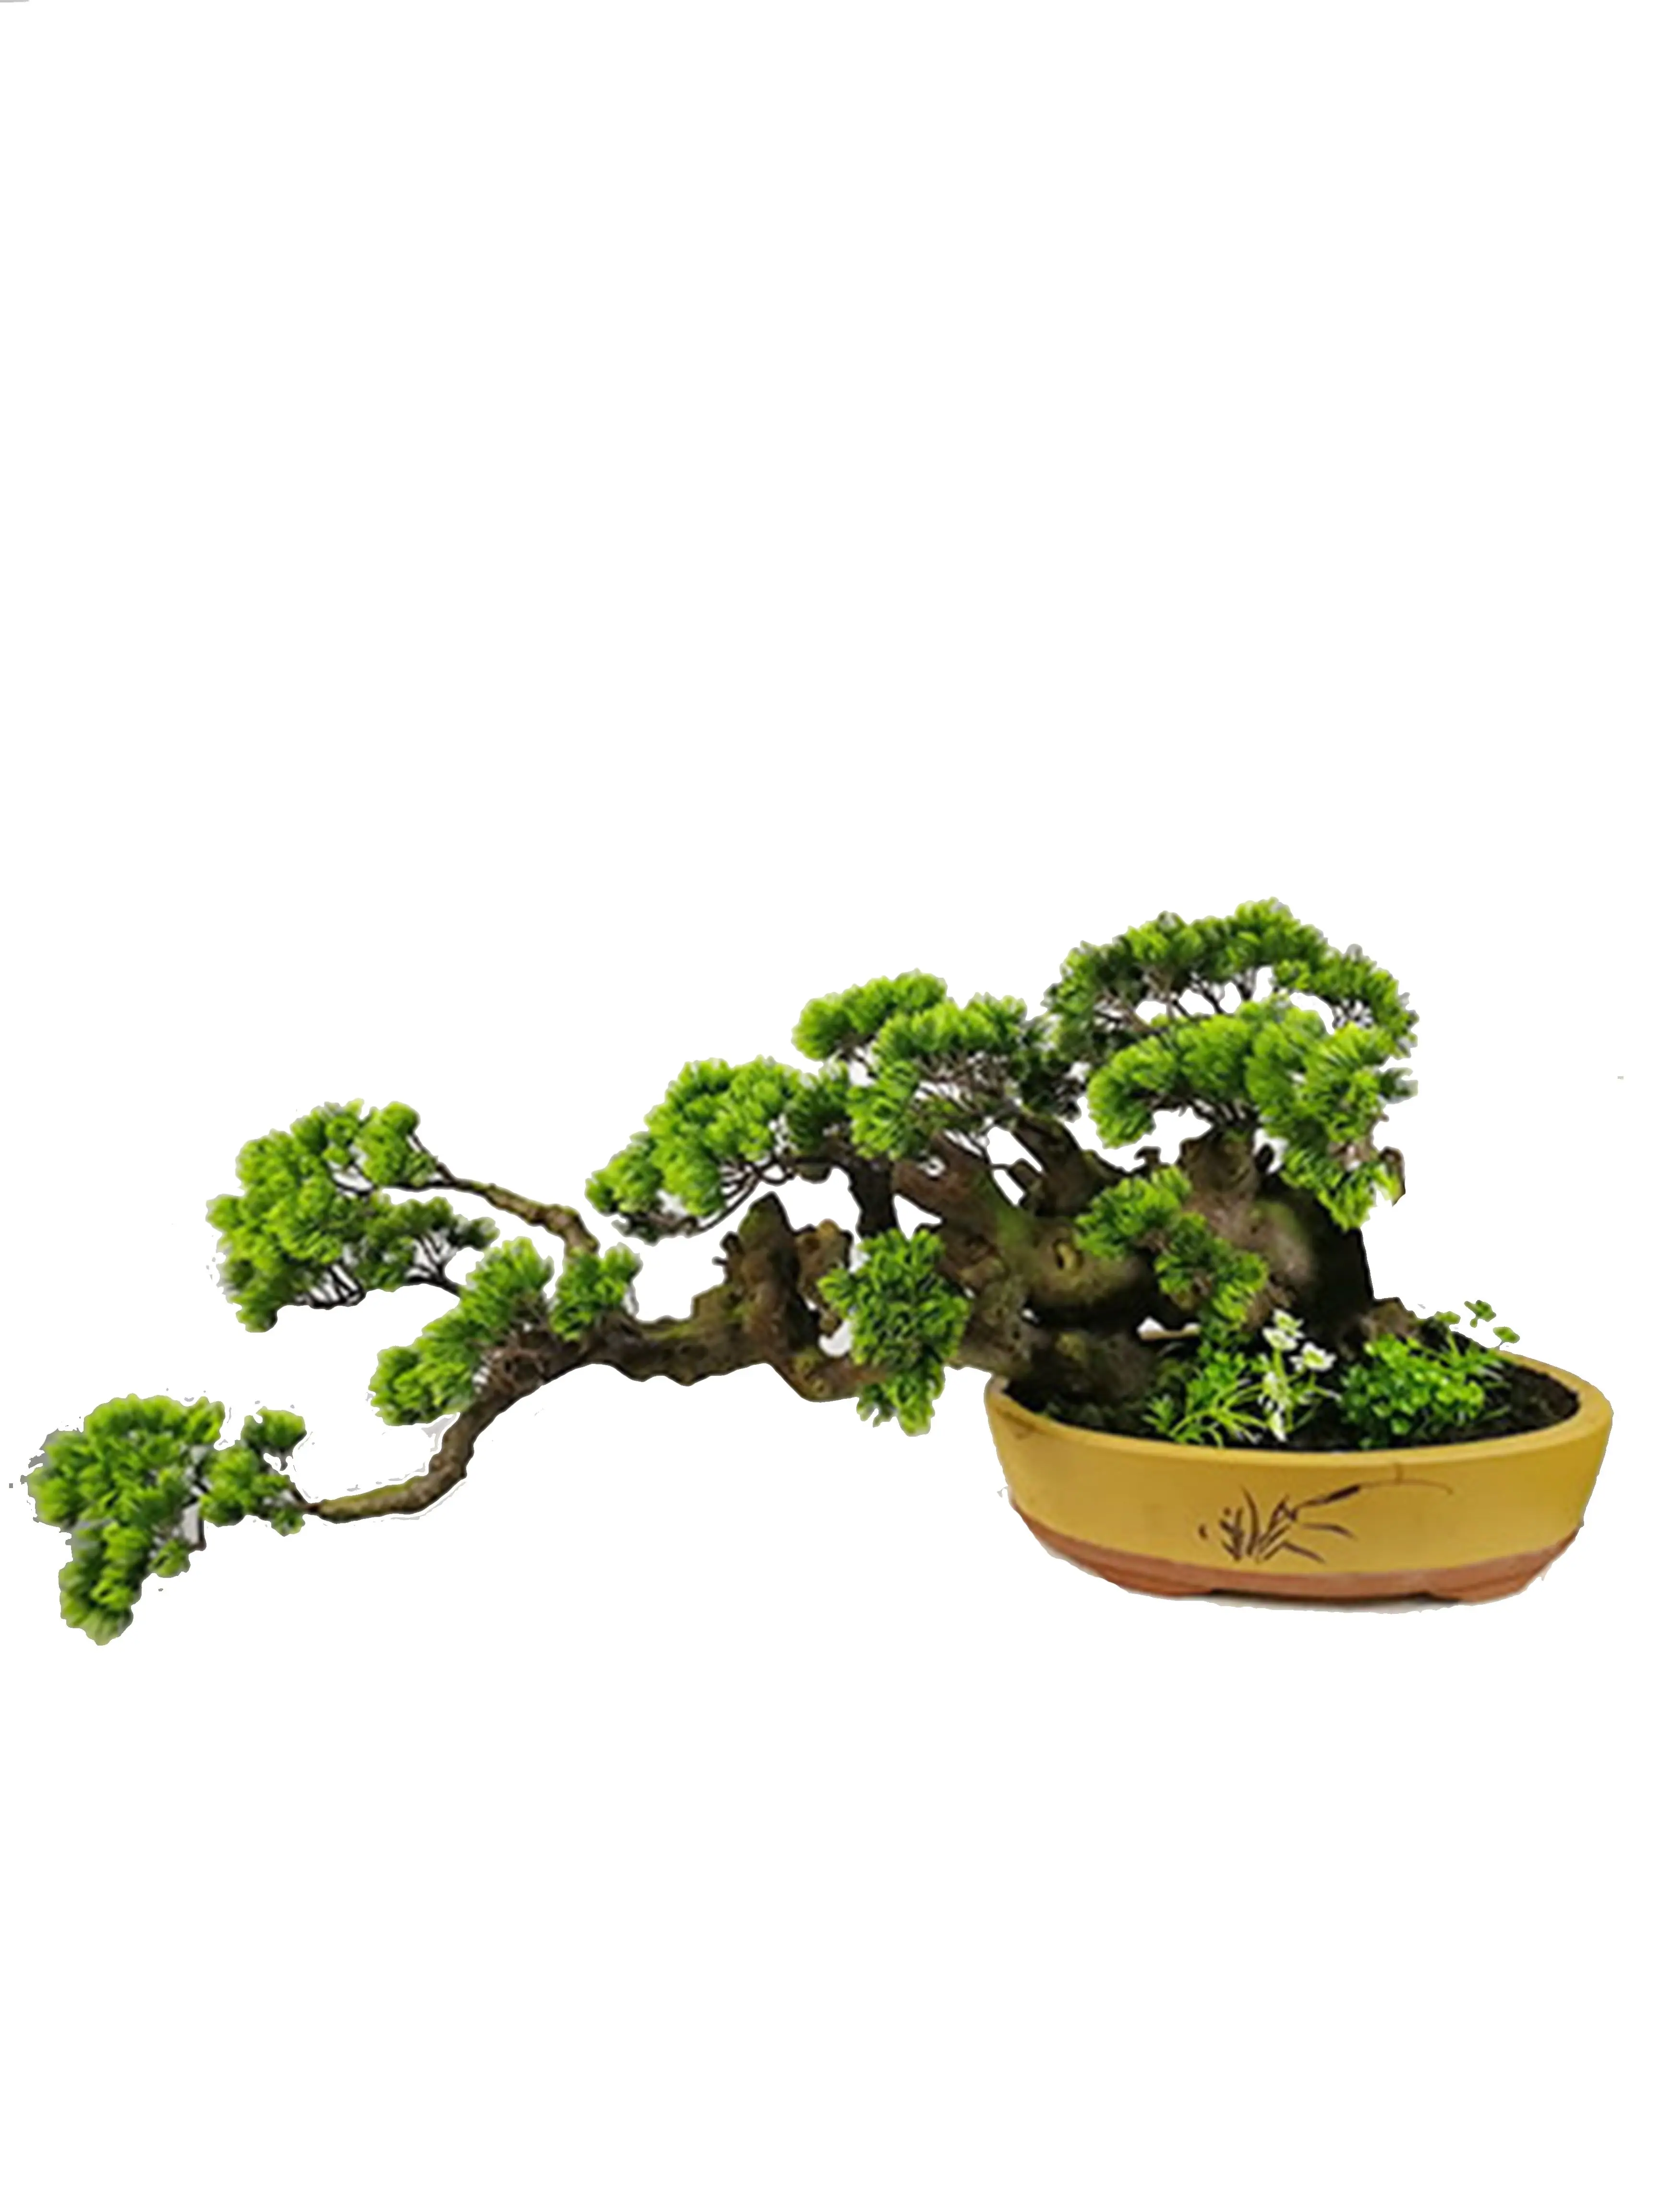 高品质人造植物迎宾松盆景树顶级销售植物装饰室内室外 buy bonsai